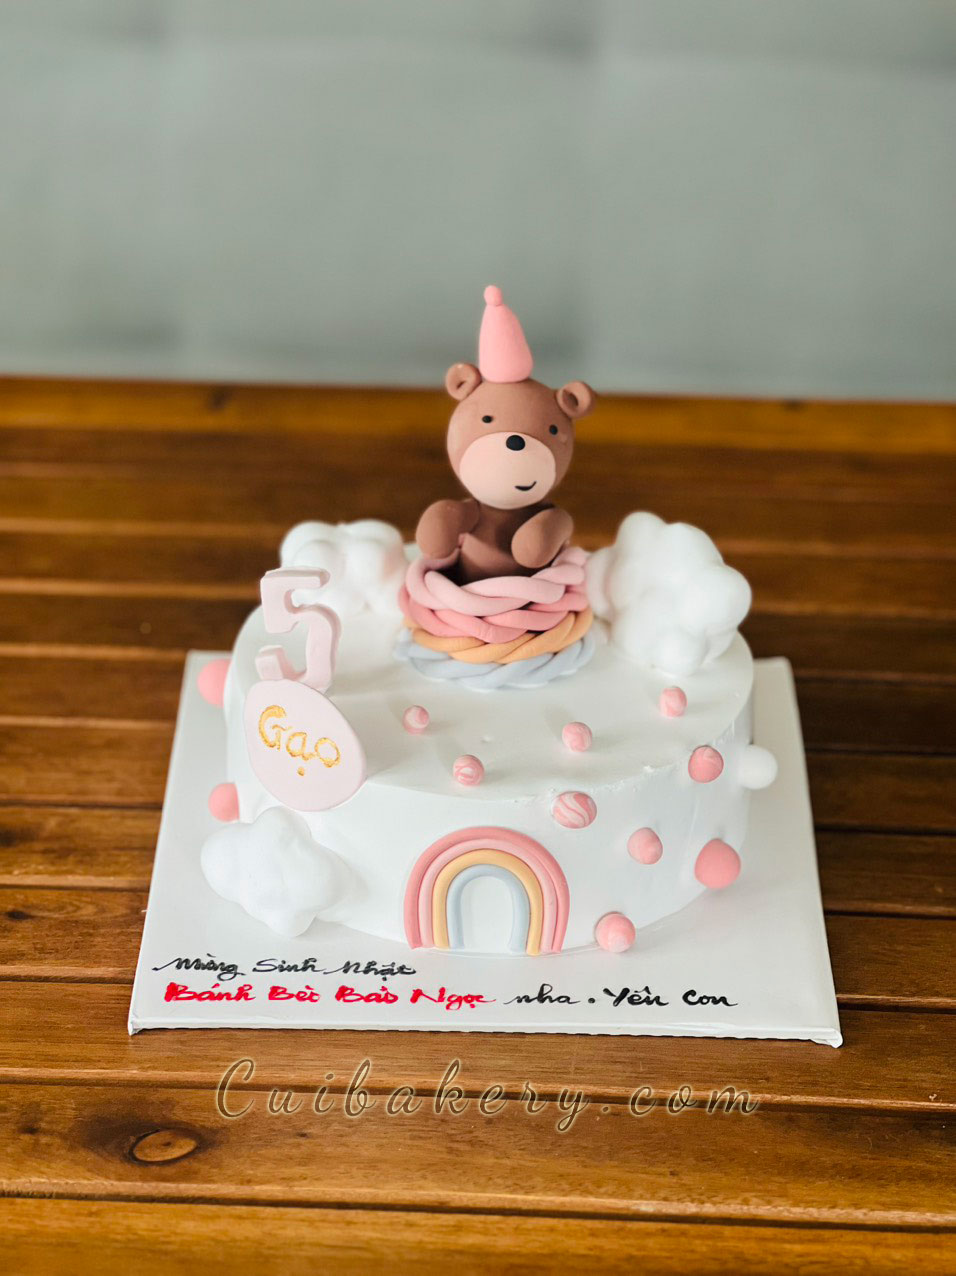 Bánh gato sinh nhật tặng bạn ngành y